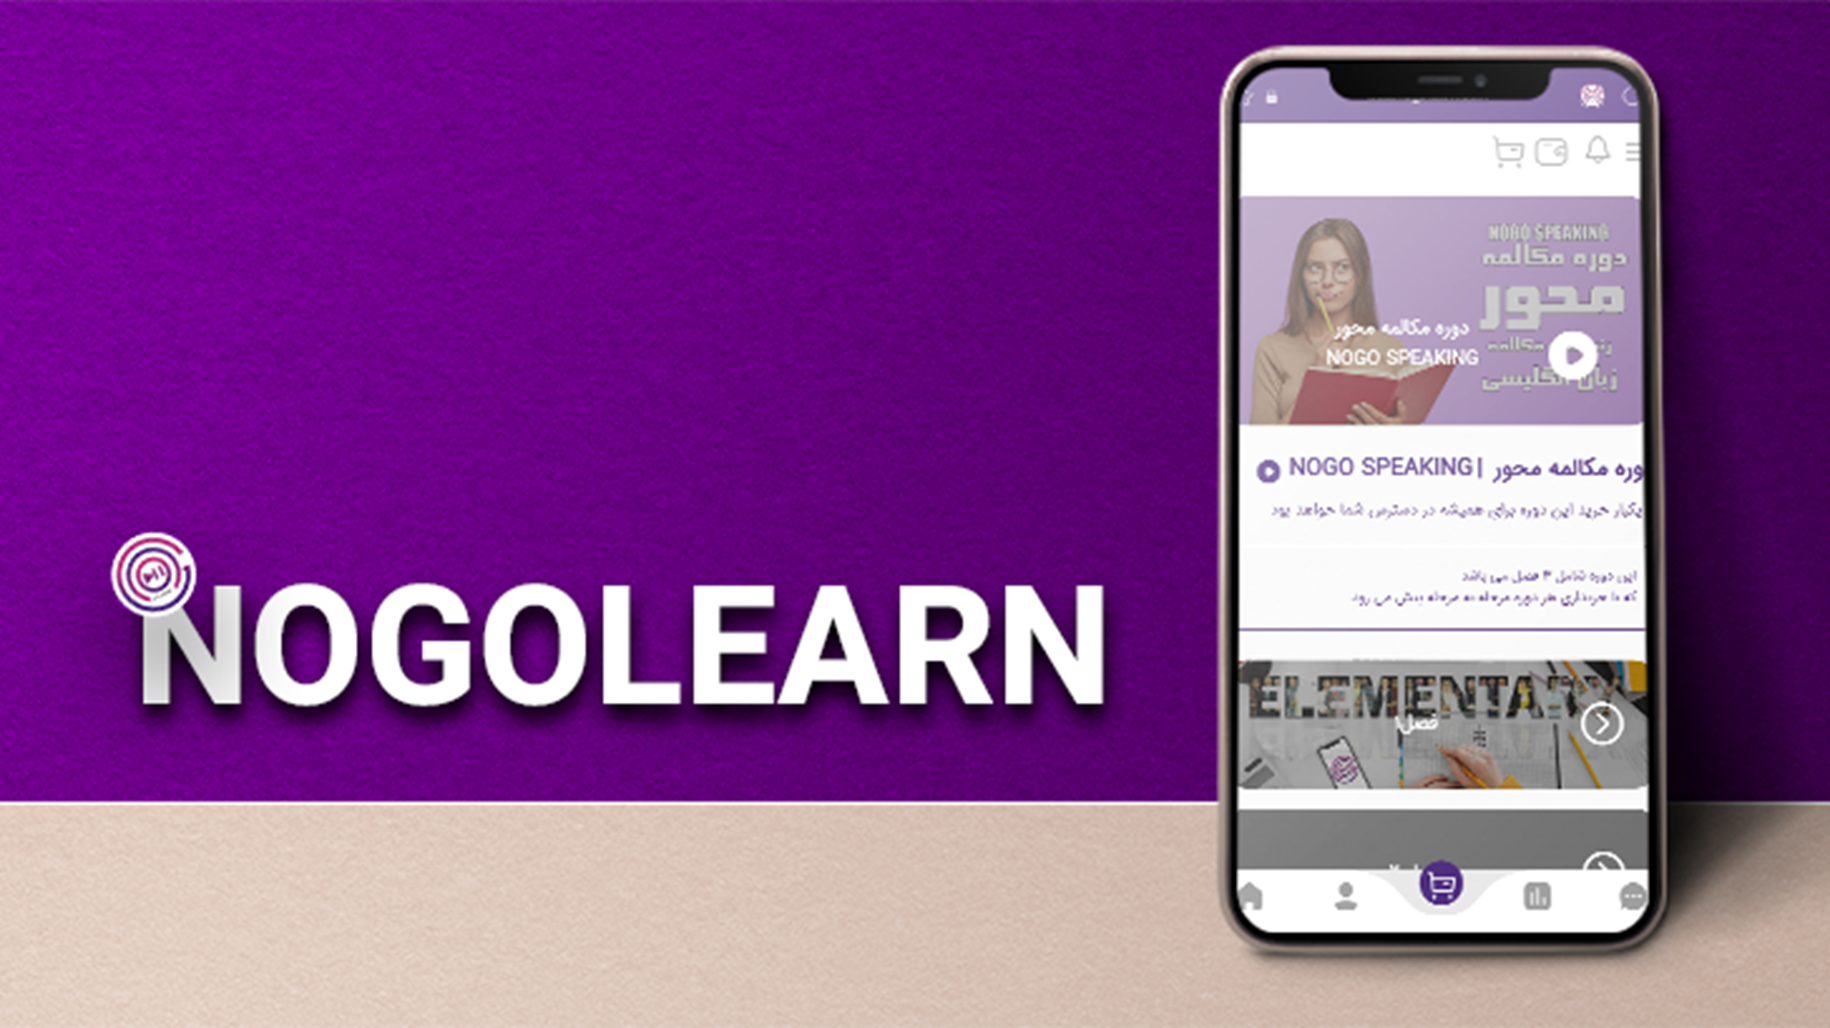 نوگولرن یک آموزشگاه زبان با تمام امکانات توی تلفن همراهت